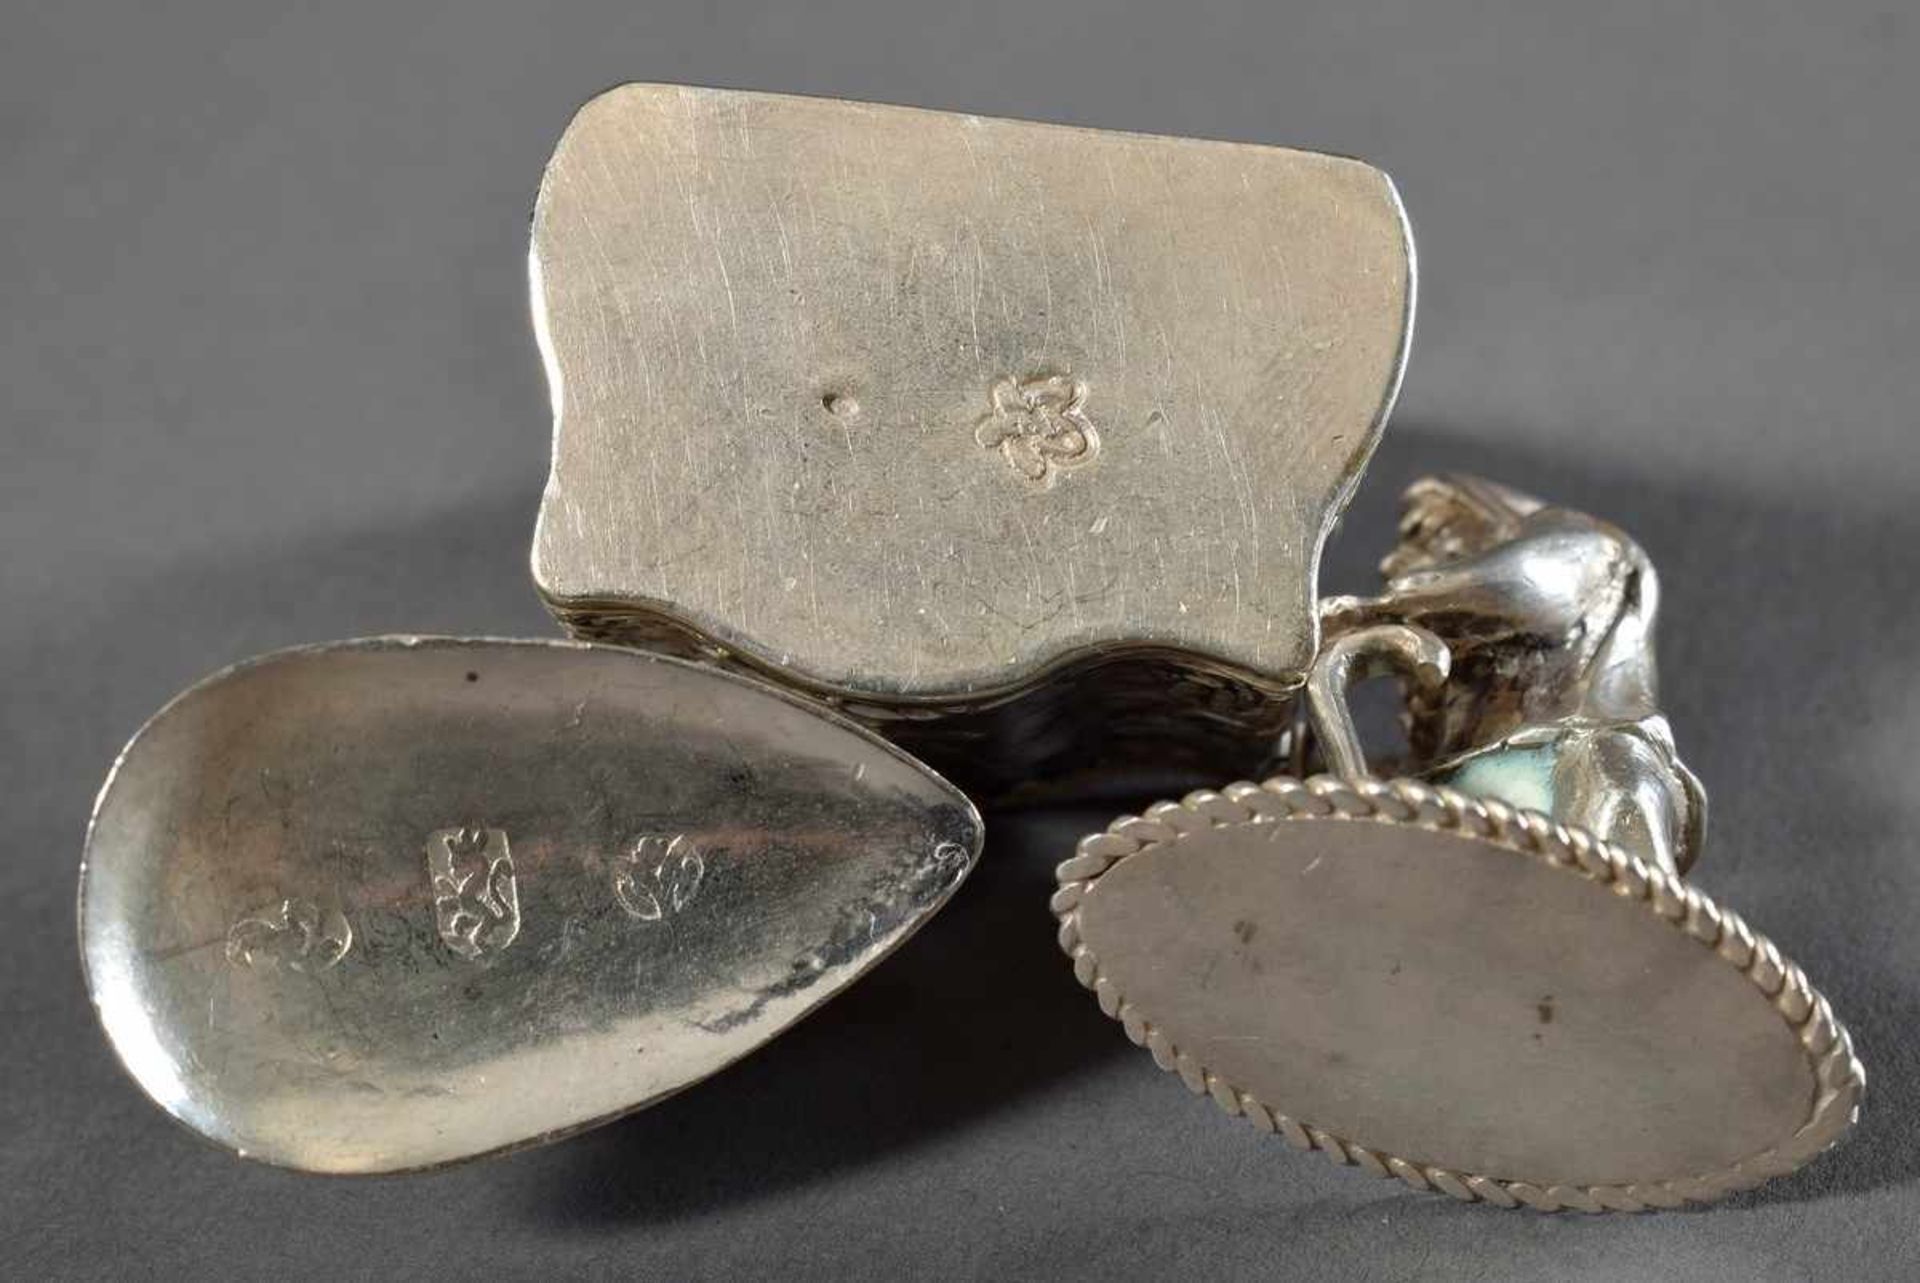 3 Diverse Miniaturen: Zwerg, Bügeleisen und Salzmetze mit reliefierten Genreszenen, Silber 800, 58g, - Bild 3 aus 3